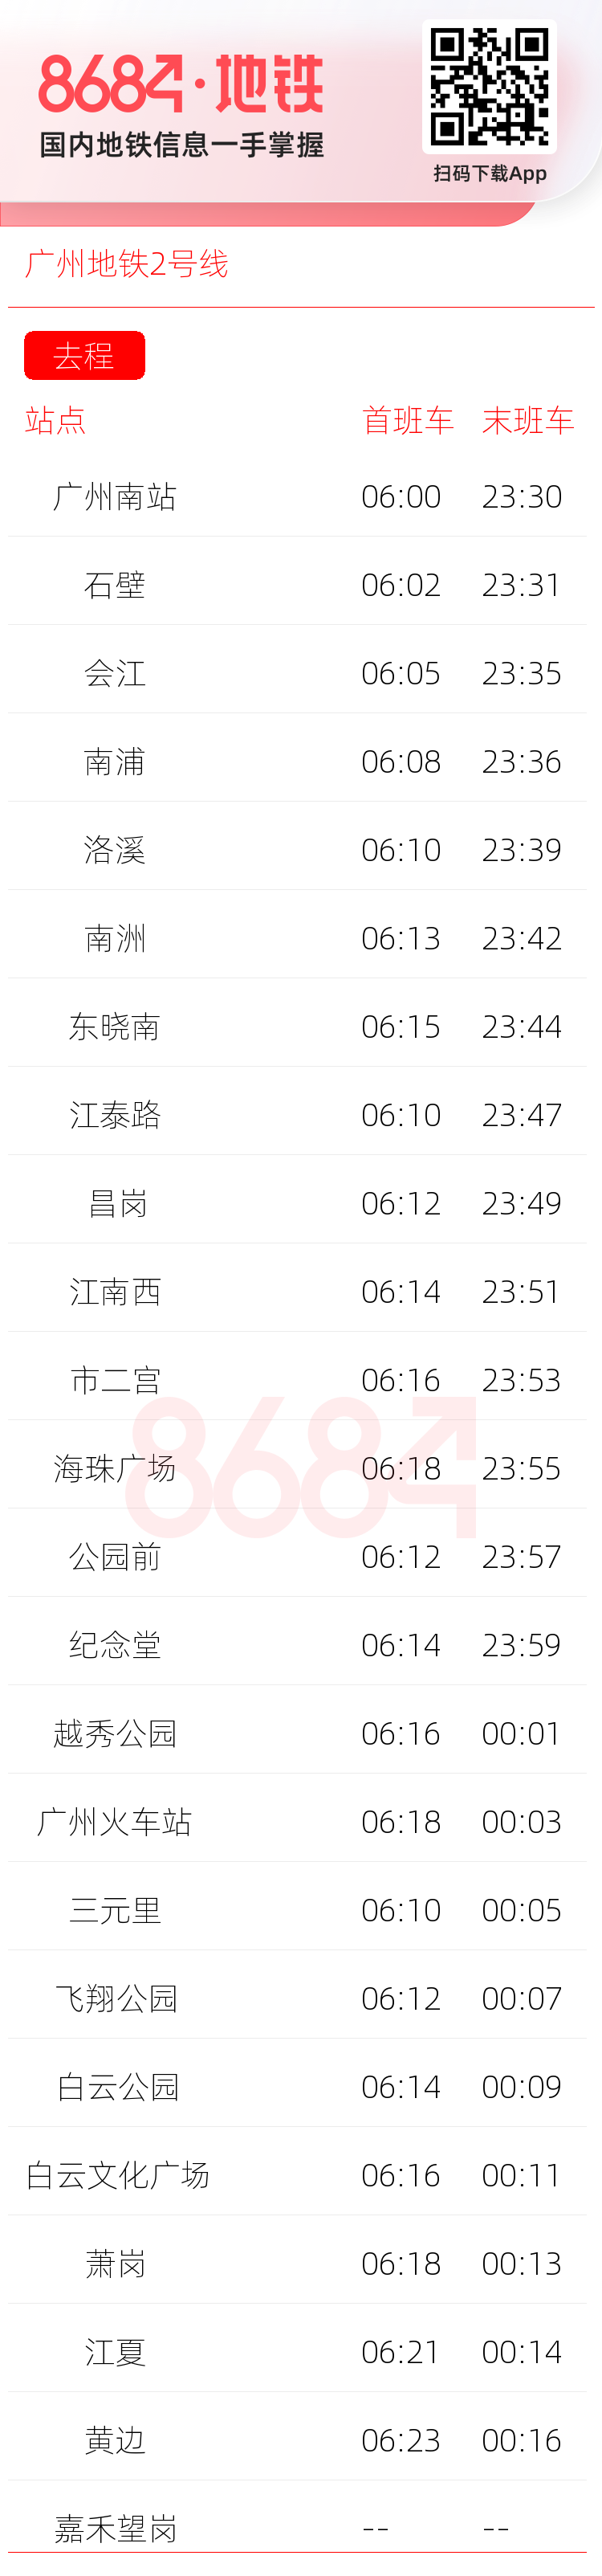 广州地铁2号线运营时间表